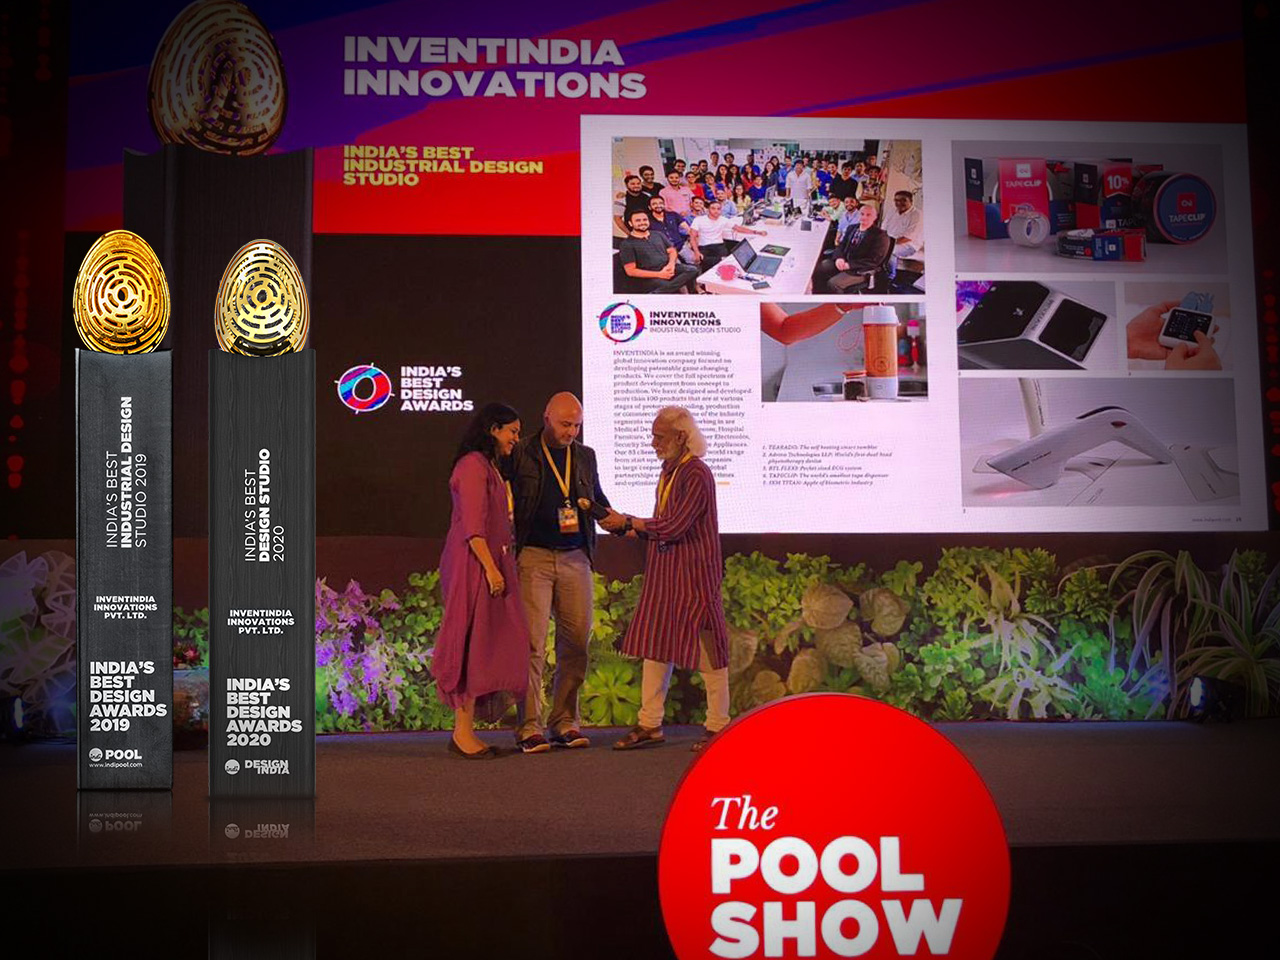 Pool Show: InventIndia – Best Industrial Design Studio 2019